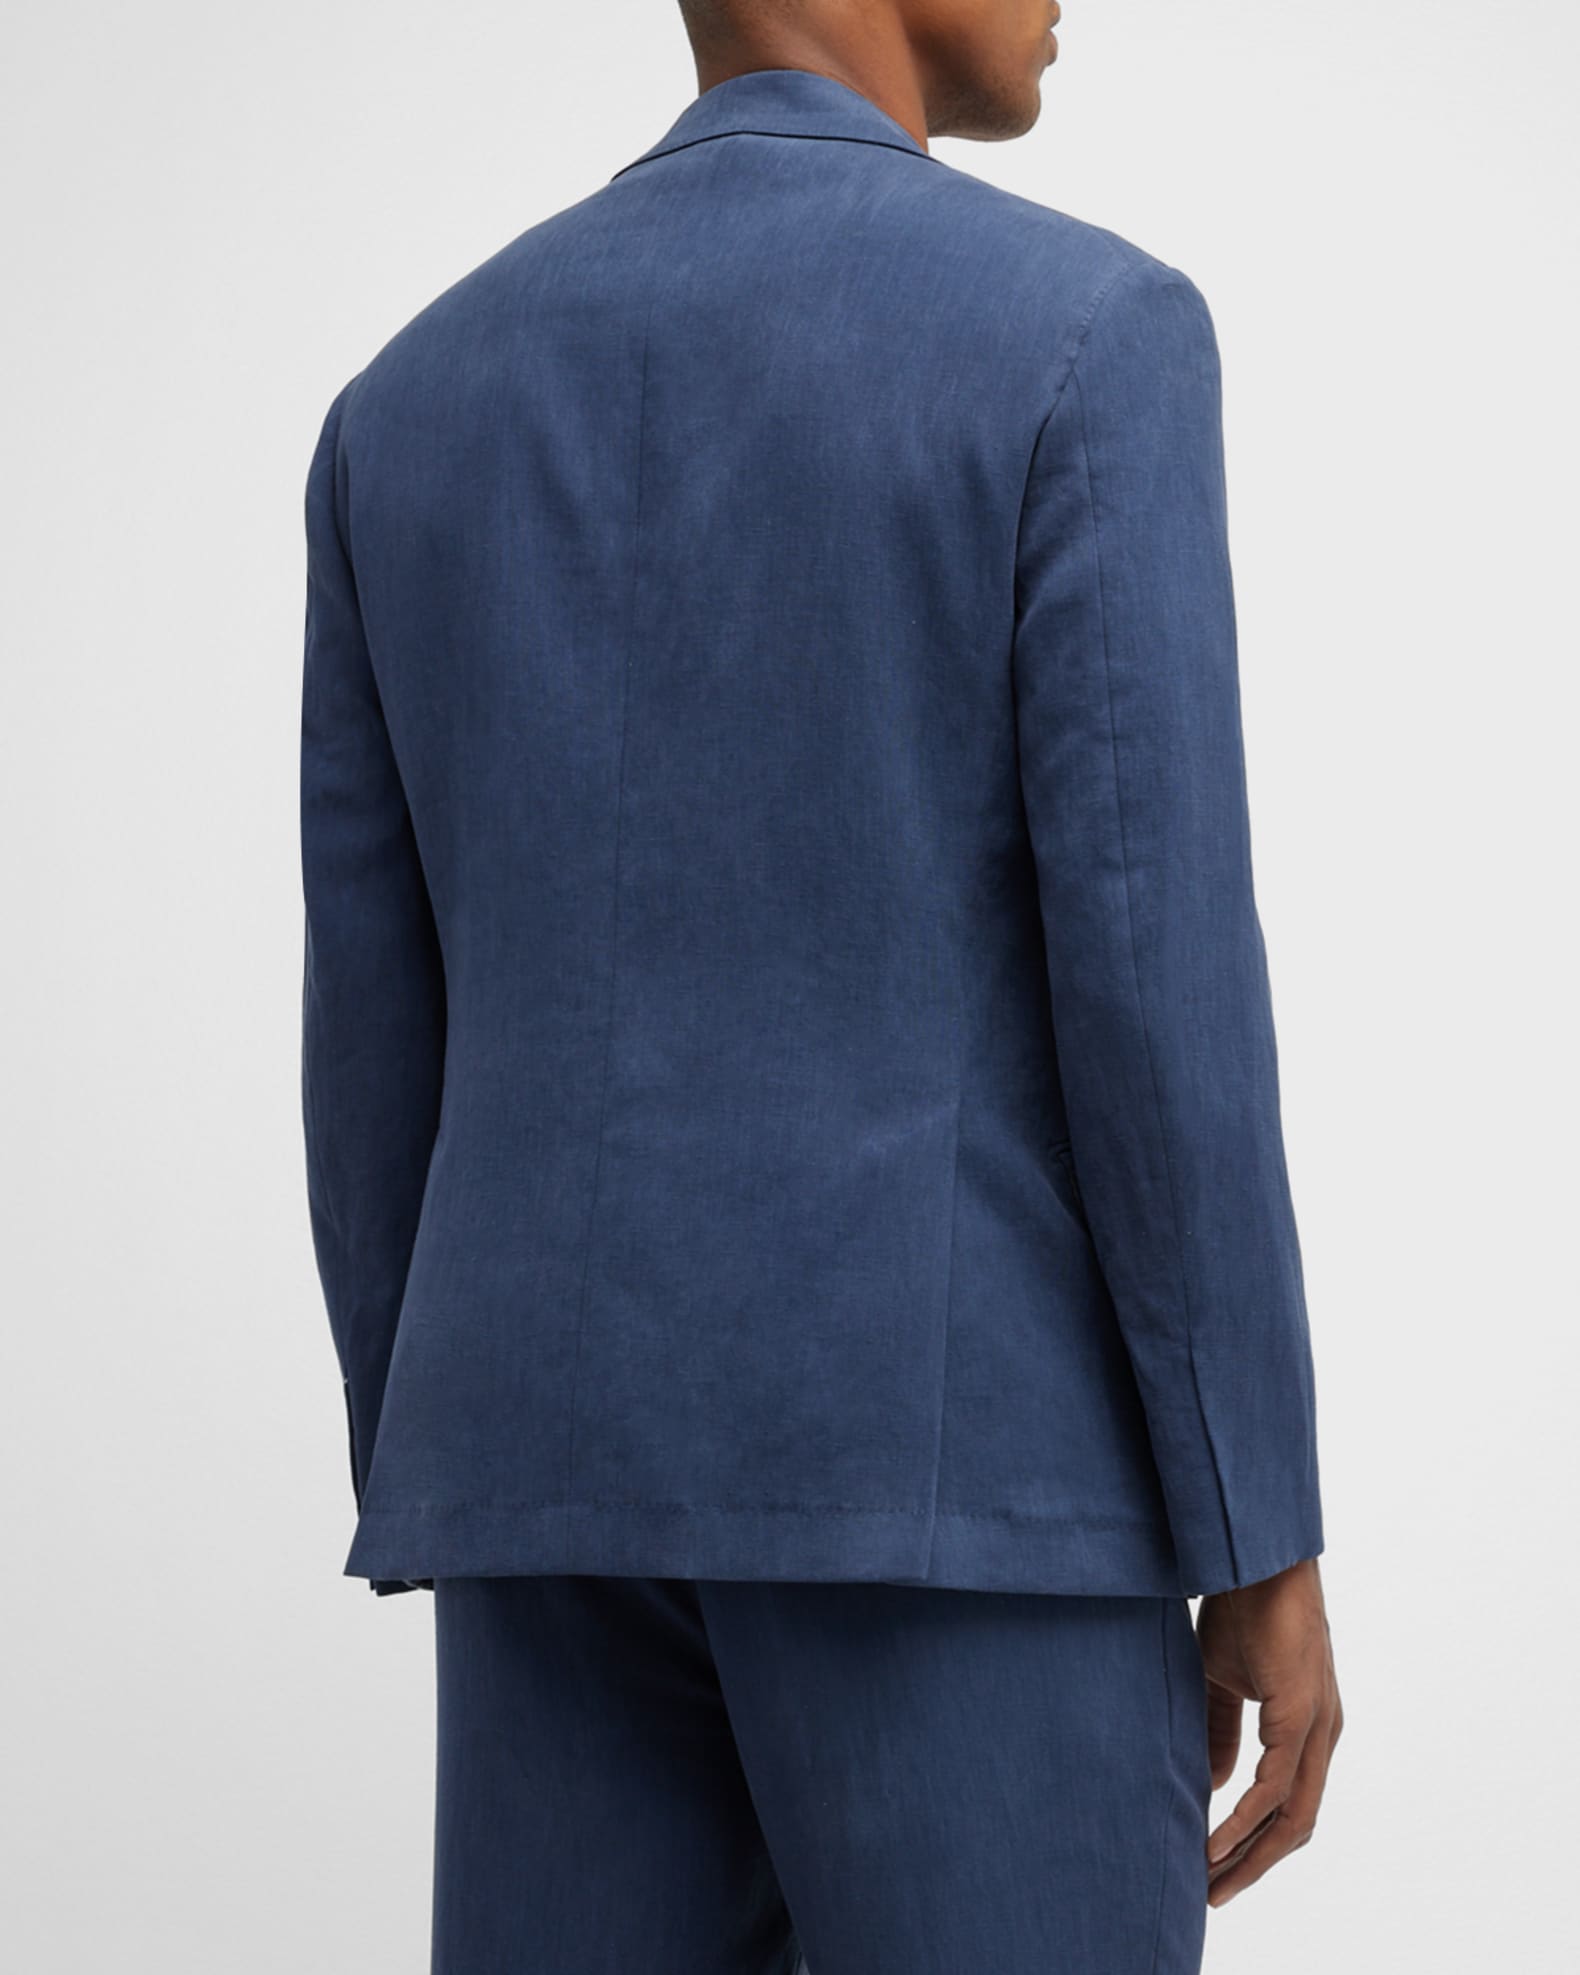 Brunello Cucinelli Men's Solid Linen Suit | Neiman Marcus